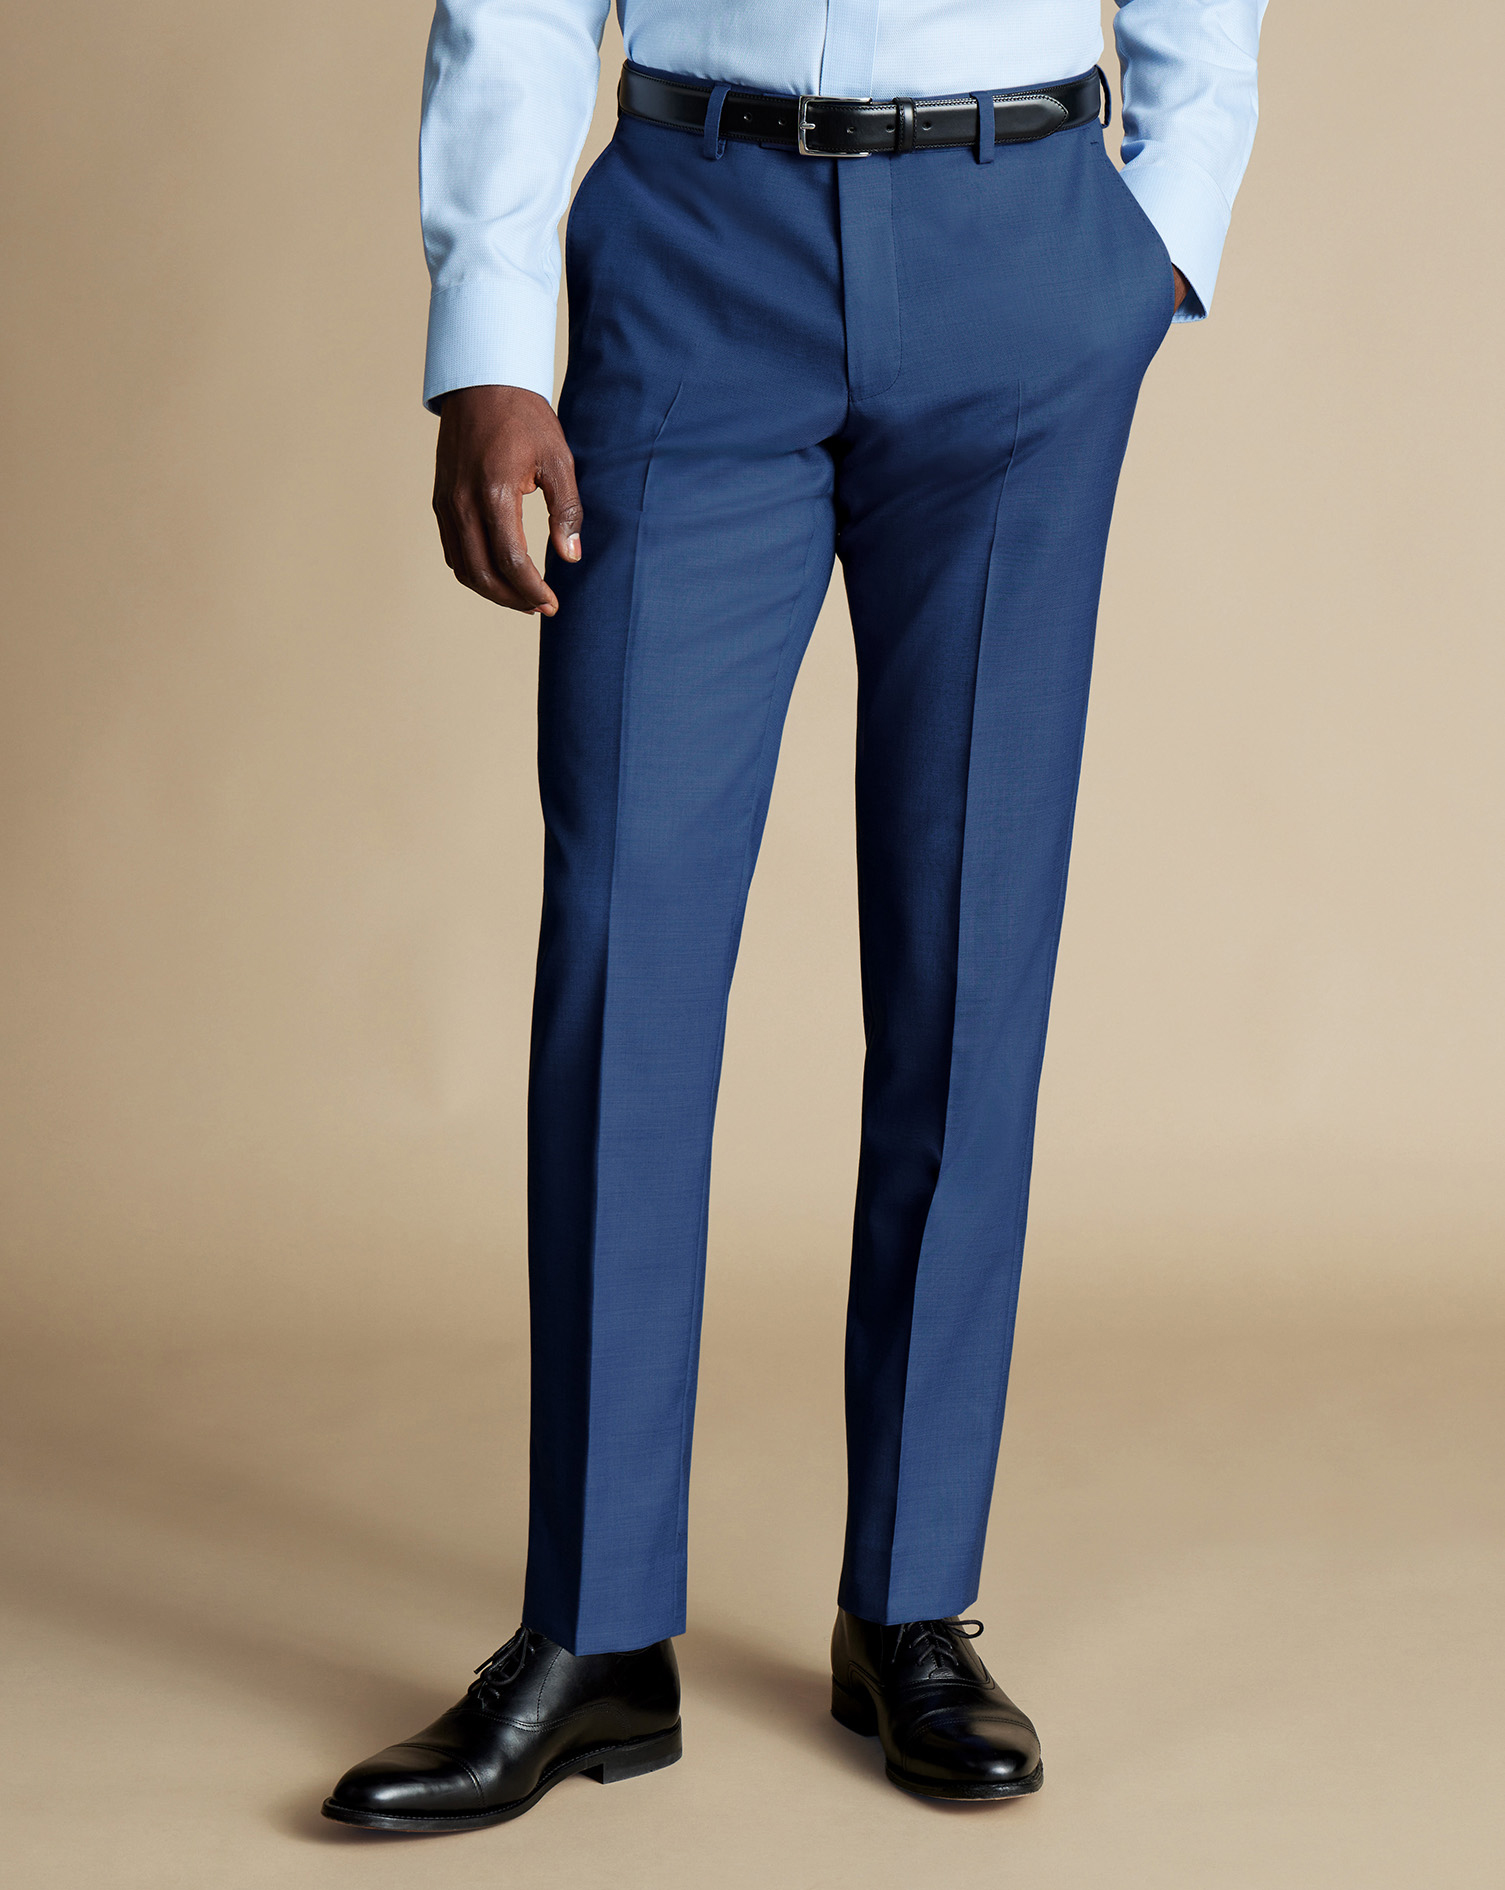 Men's Charles Tyrwhitt Ultimate Performance Sharkskin Suit Trousers - Indigo Blue Size 42/34
